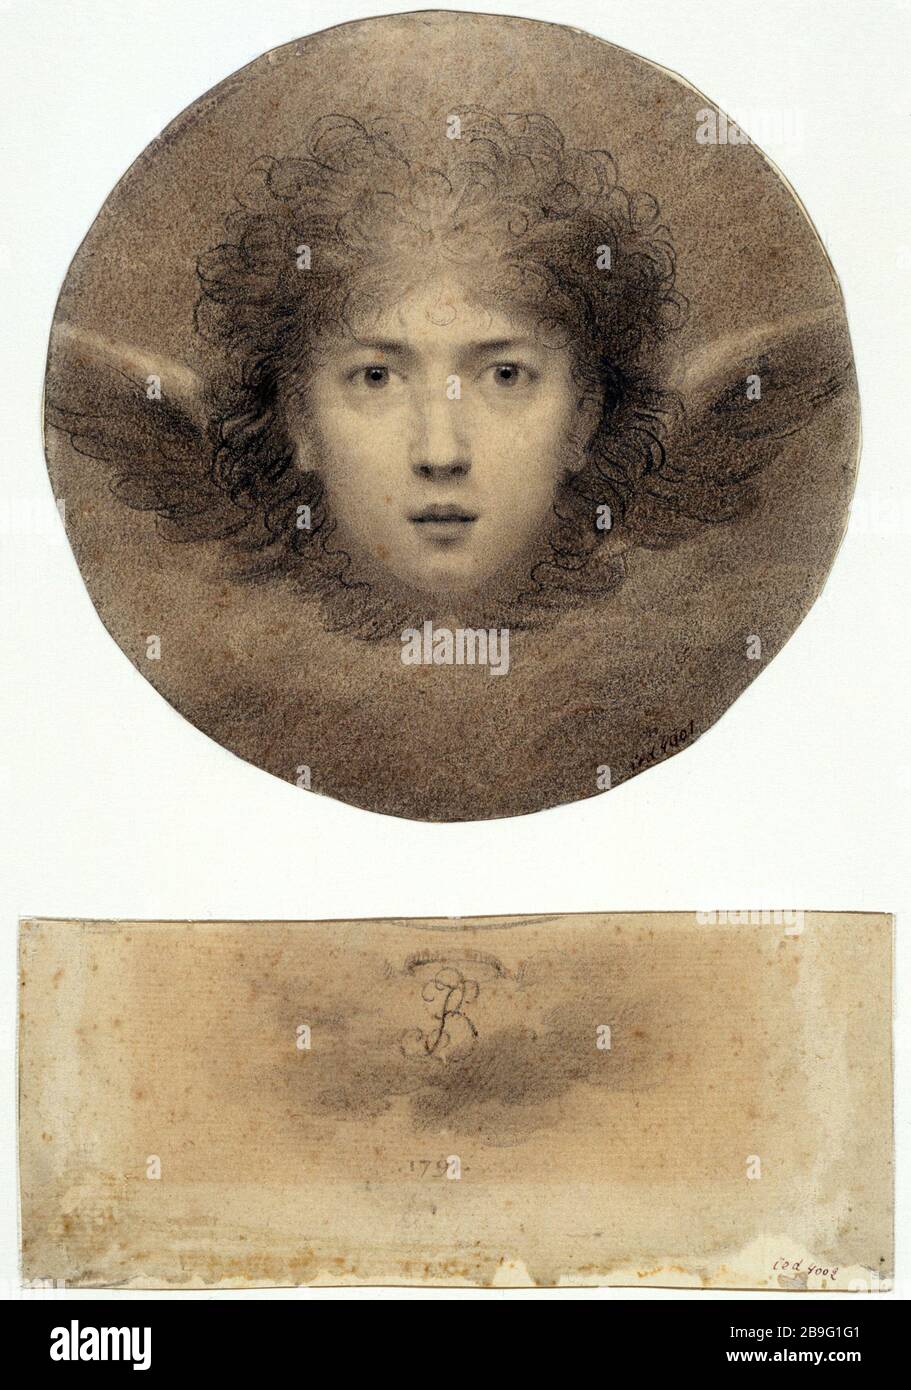 CAPO ANGELO E DATATO INIZIALE, 1791 Jean-Baptiste Isabey (1767-1855). "Tête d'ange et initiales datées de 1791". Parigi, musée Carnavalet. Foto Stock